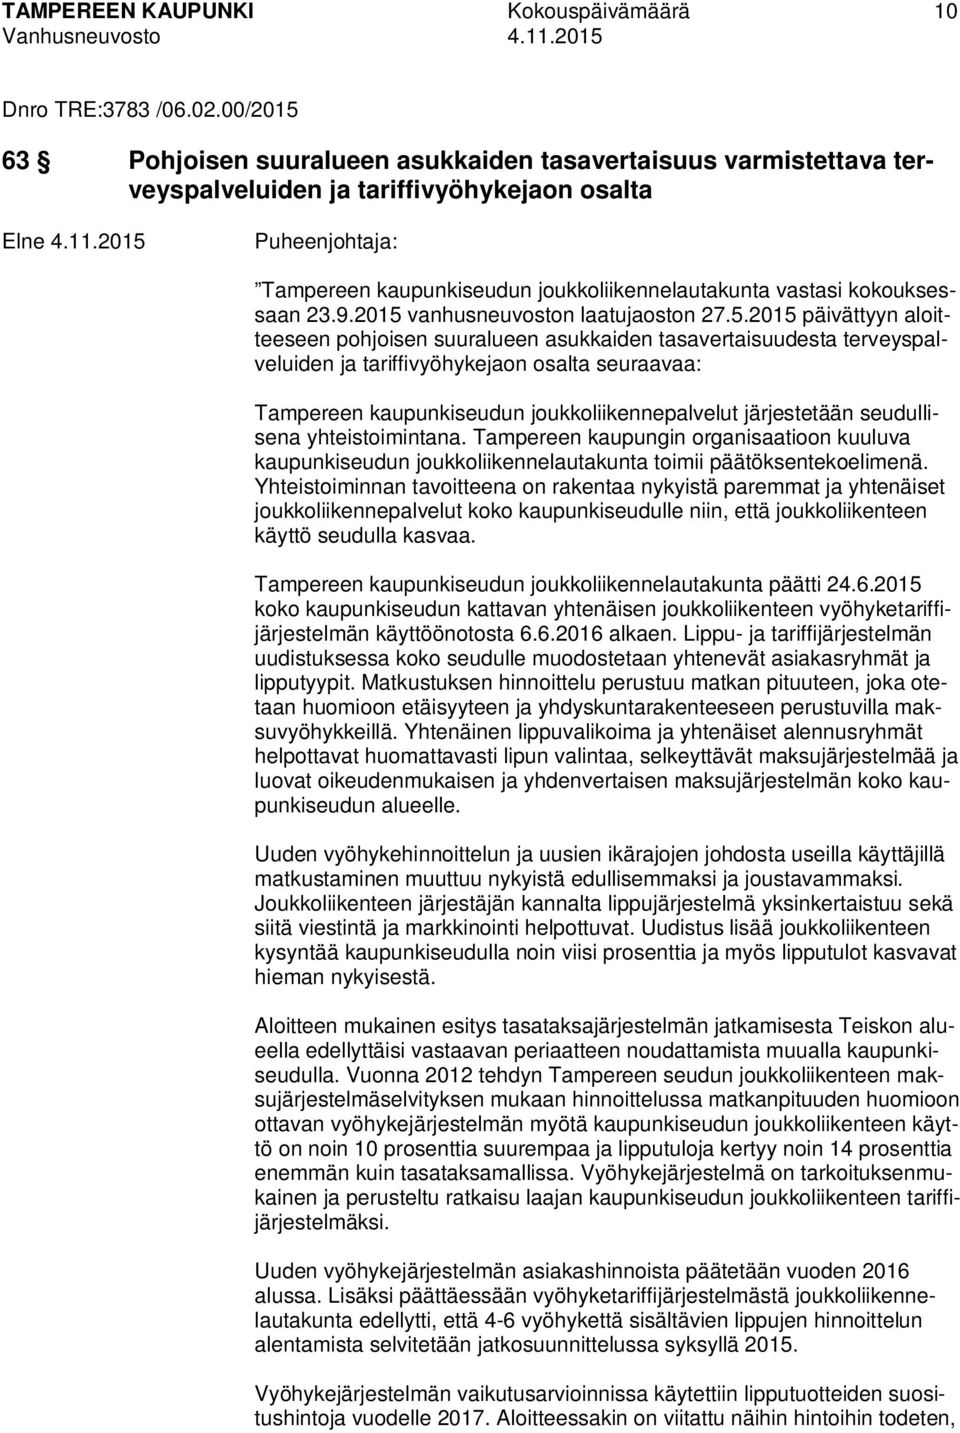 2015 vanhusneuvoston laatujaoston 27.5.2015 päivättyyn aloitteeseen pohjoisen suuralueen asukkaiden tasavertaisuudesta terveyspalveluiden ja tariffivyöhykejaon osalta seuraavaa: Tampereen